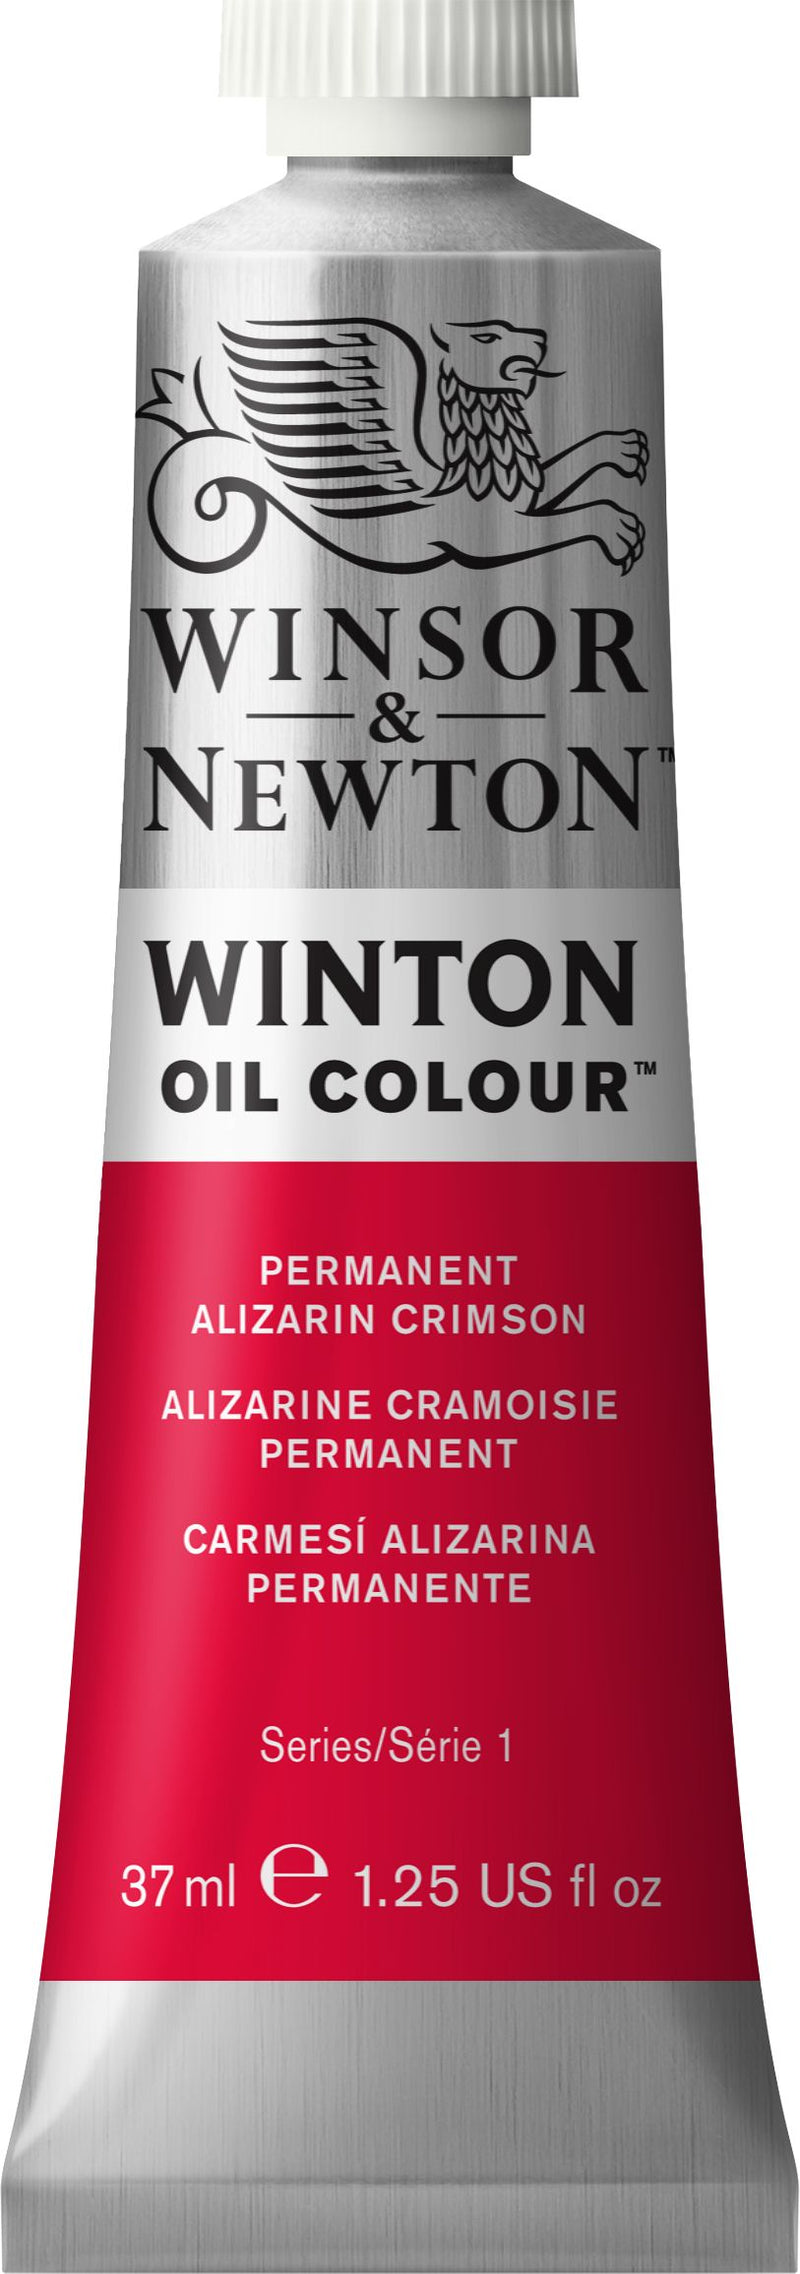 Winton Oil Colour Permanent Alizarin Crimson - 37ml tube